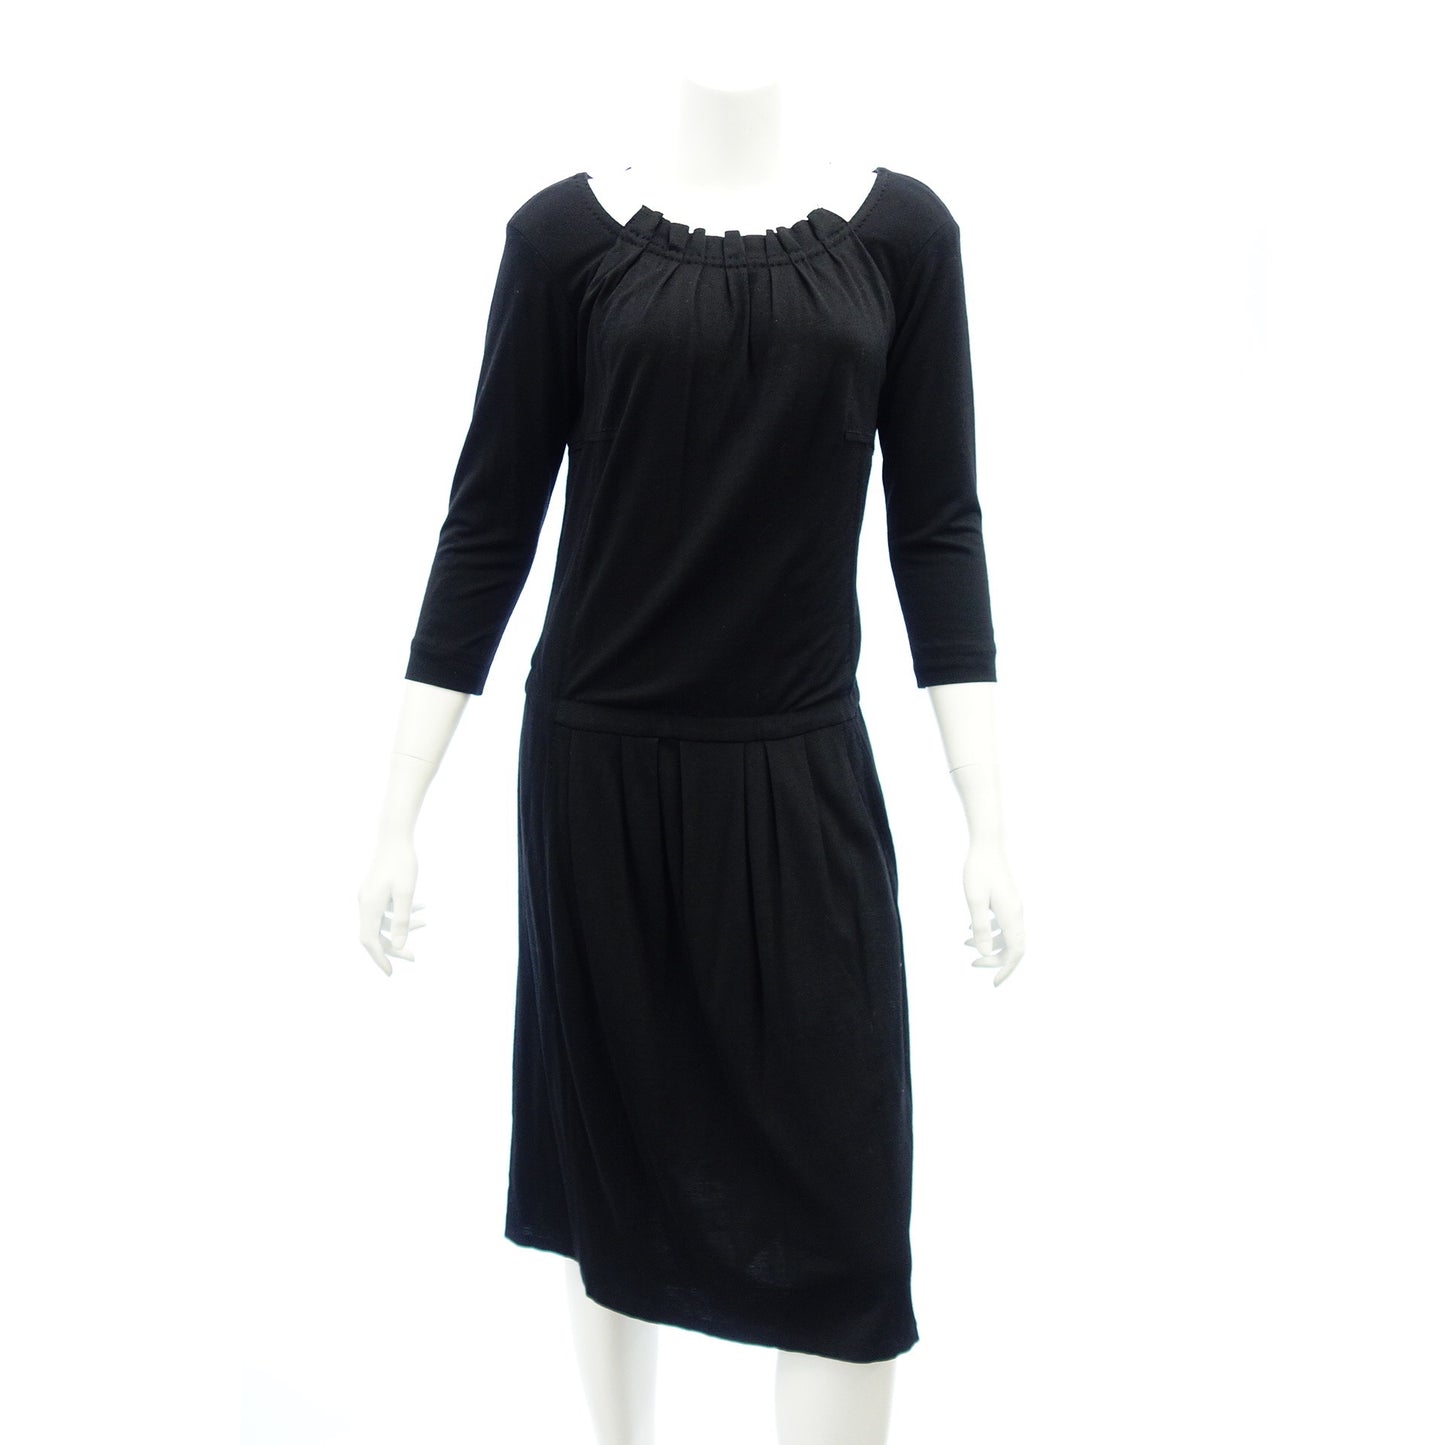 状况良好 ◆Louis Vuitton 长连衣裙 羊毛 x 丝绸 RW072A 女式黑色 尺码 36 LOUIS VUITTON [AFB23] 